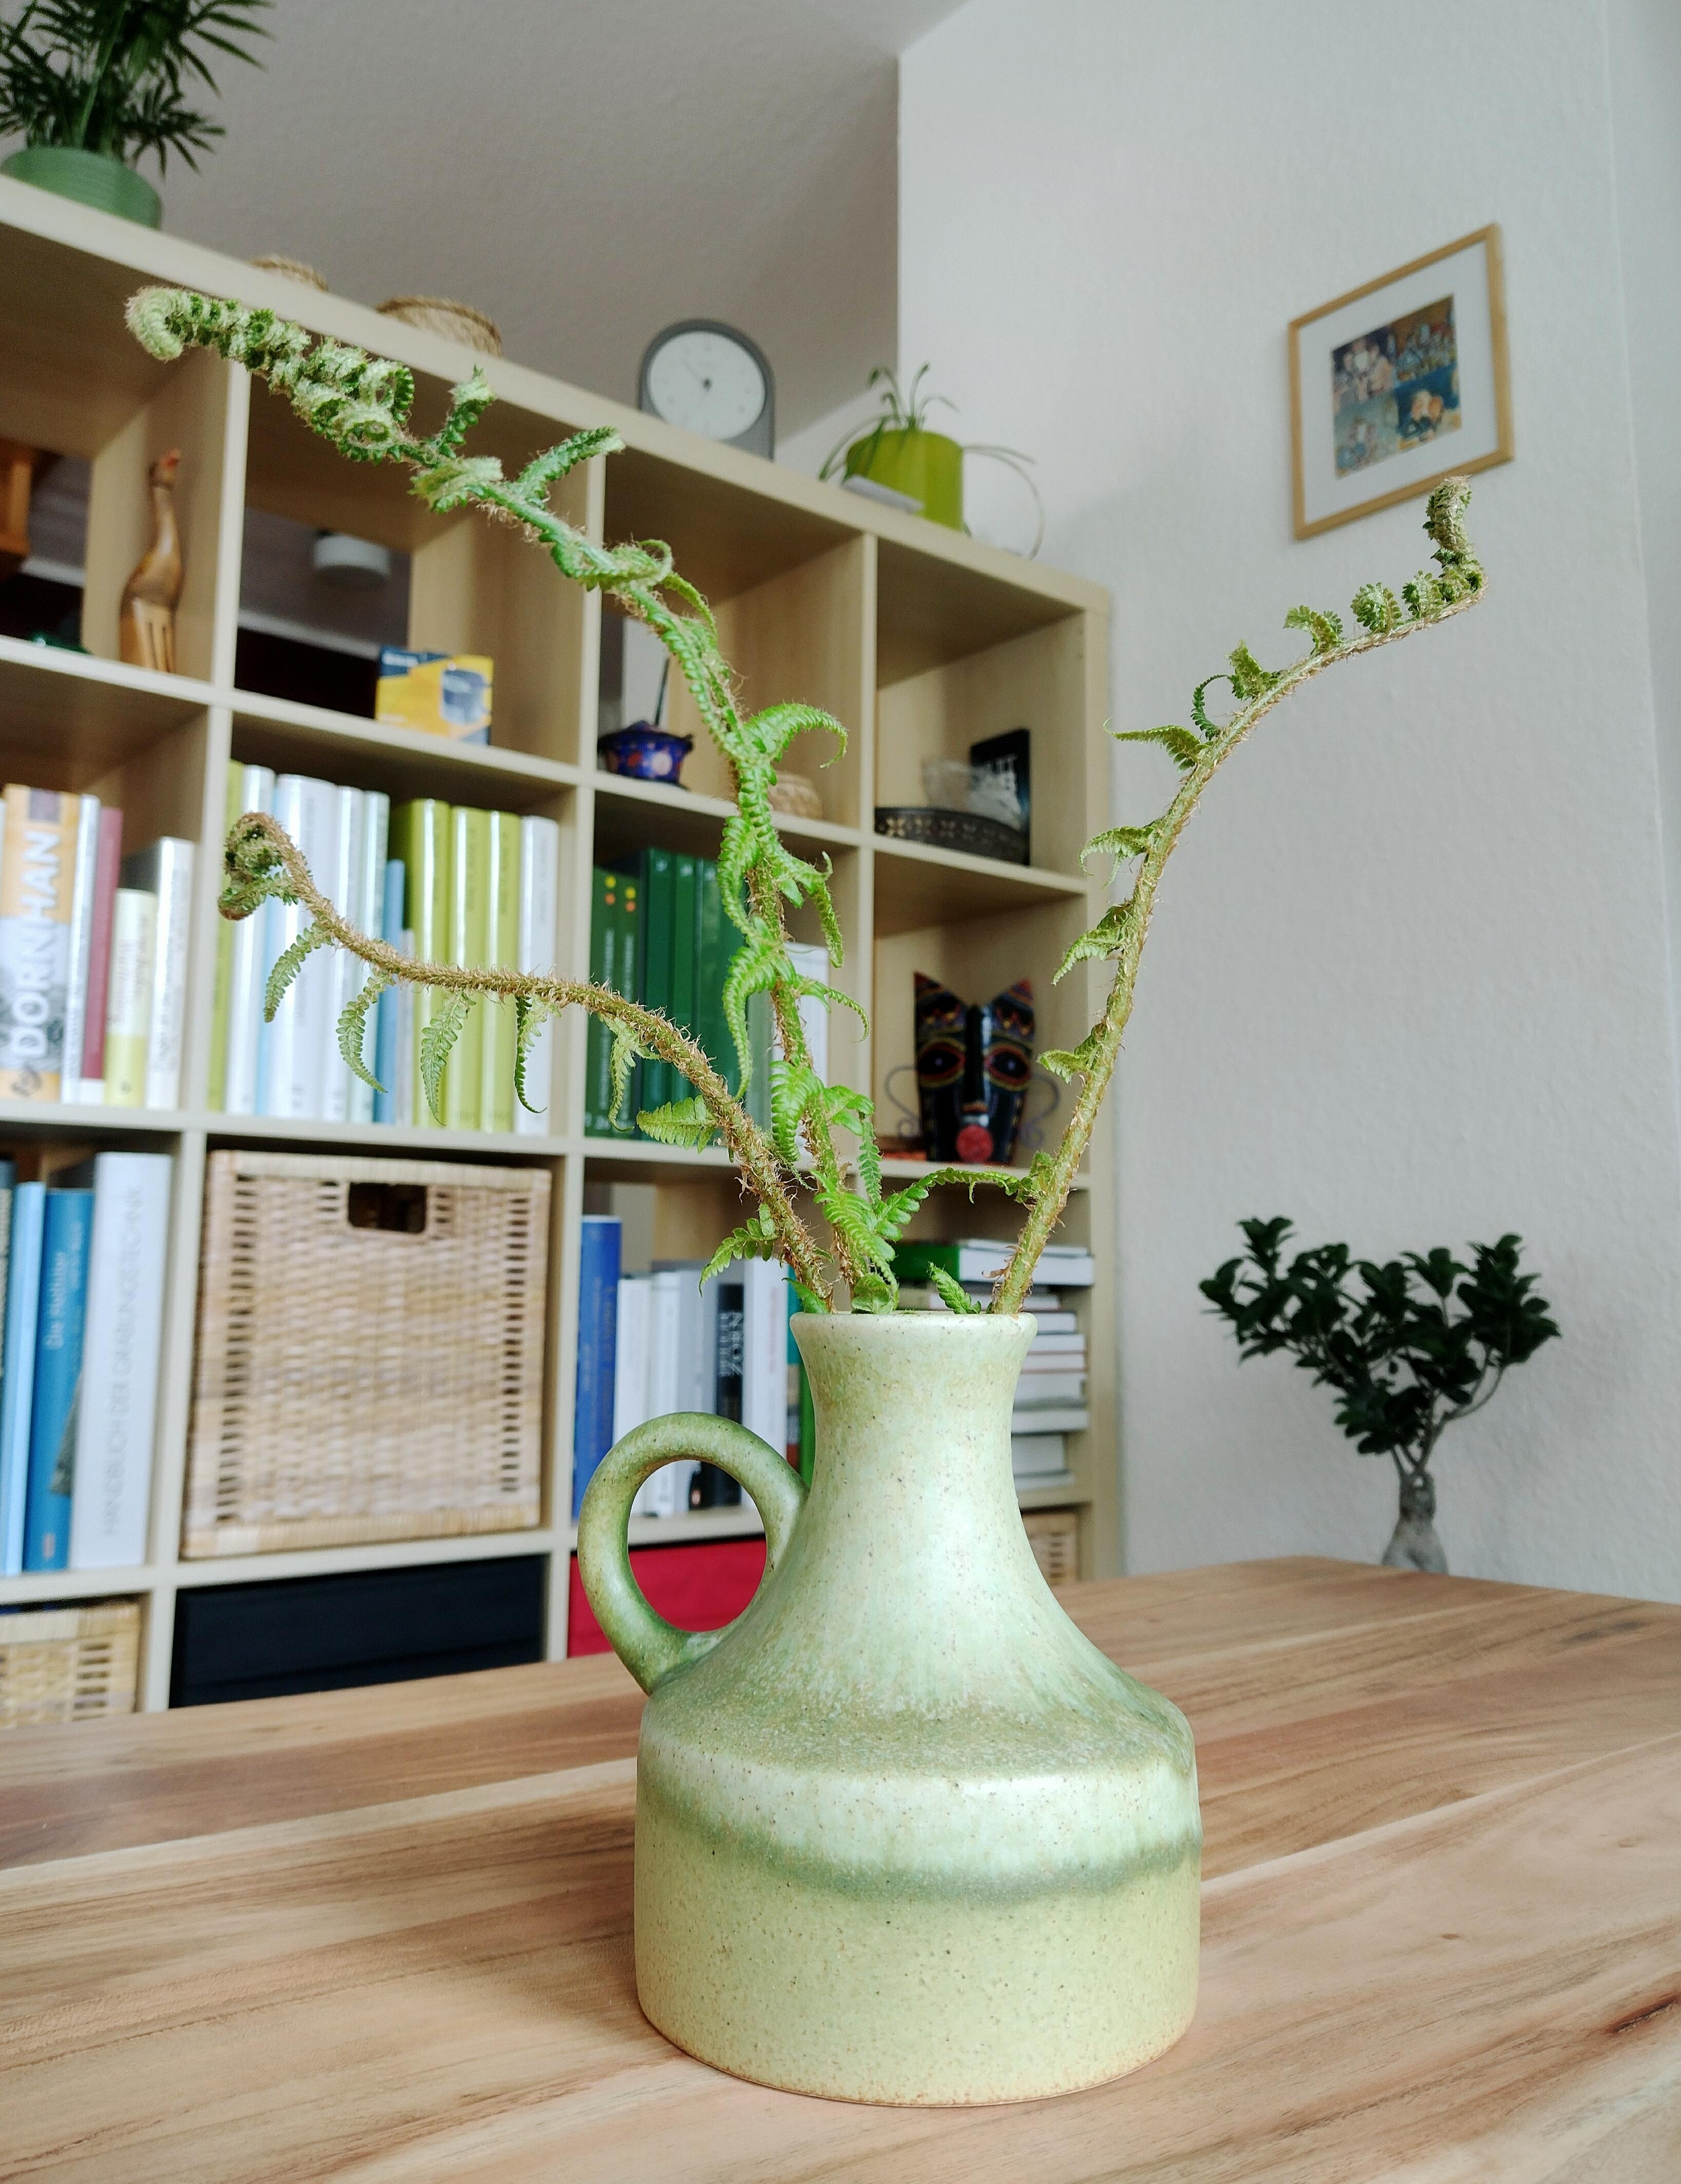 Flohmarktfund 💚😍
#vase #grün #keramikvase #vintage #regal #raumtrenner #wohnzimmer